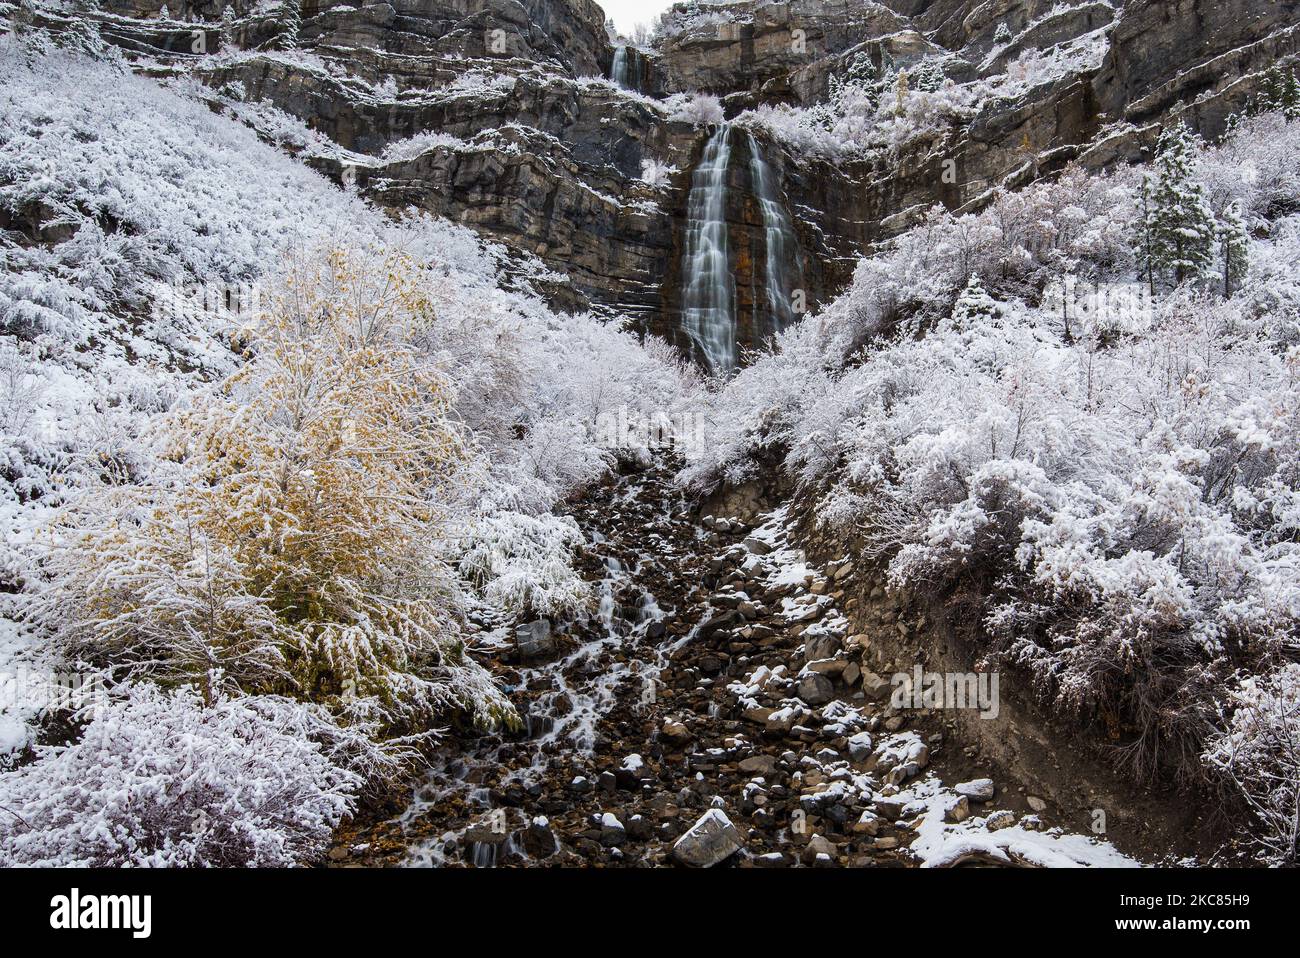 Bridal Veil Falls in inverno. Questa iconica cascata si trova a pochi chilometri a est di Provo, Utah, USA, nelle Wasatch Mountains. Foto Stock